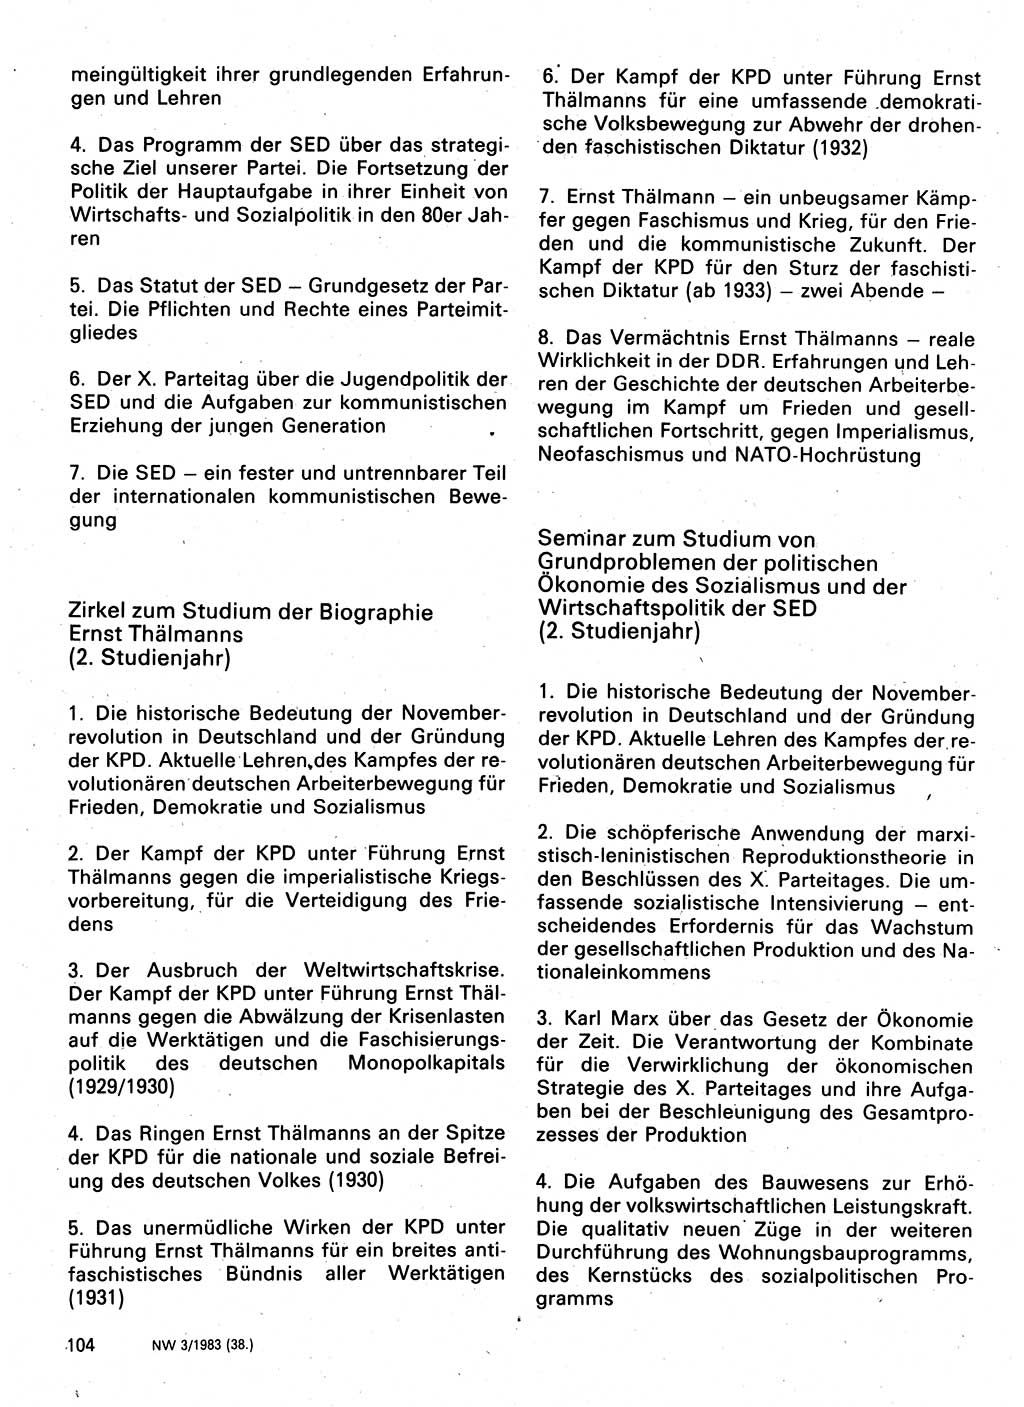 Neuer Weg (NW), Organ des Zentralkomitees (ZK) der SED (Sozialistische Einheitspartei Deutschlands) für Fragen des Parteilebens, 38. Jahrgang [Deutsche Demokratische Republik (DDR)] 1983, Seite 104 (NW ZK SED DDR 1983, S. 104)